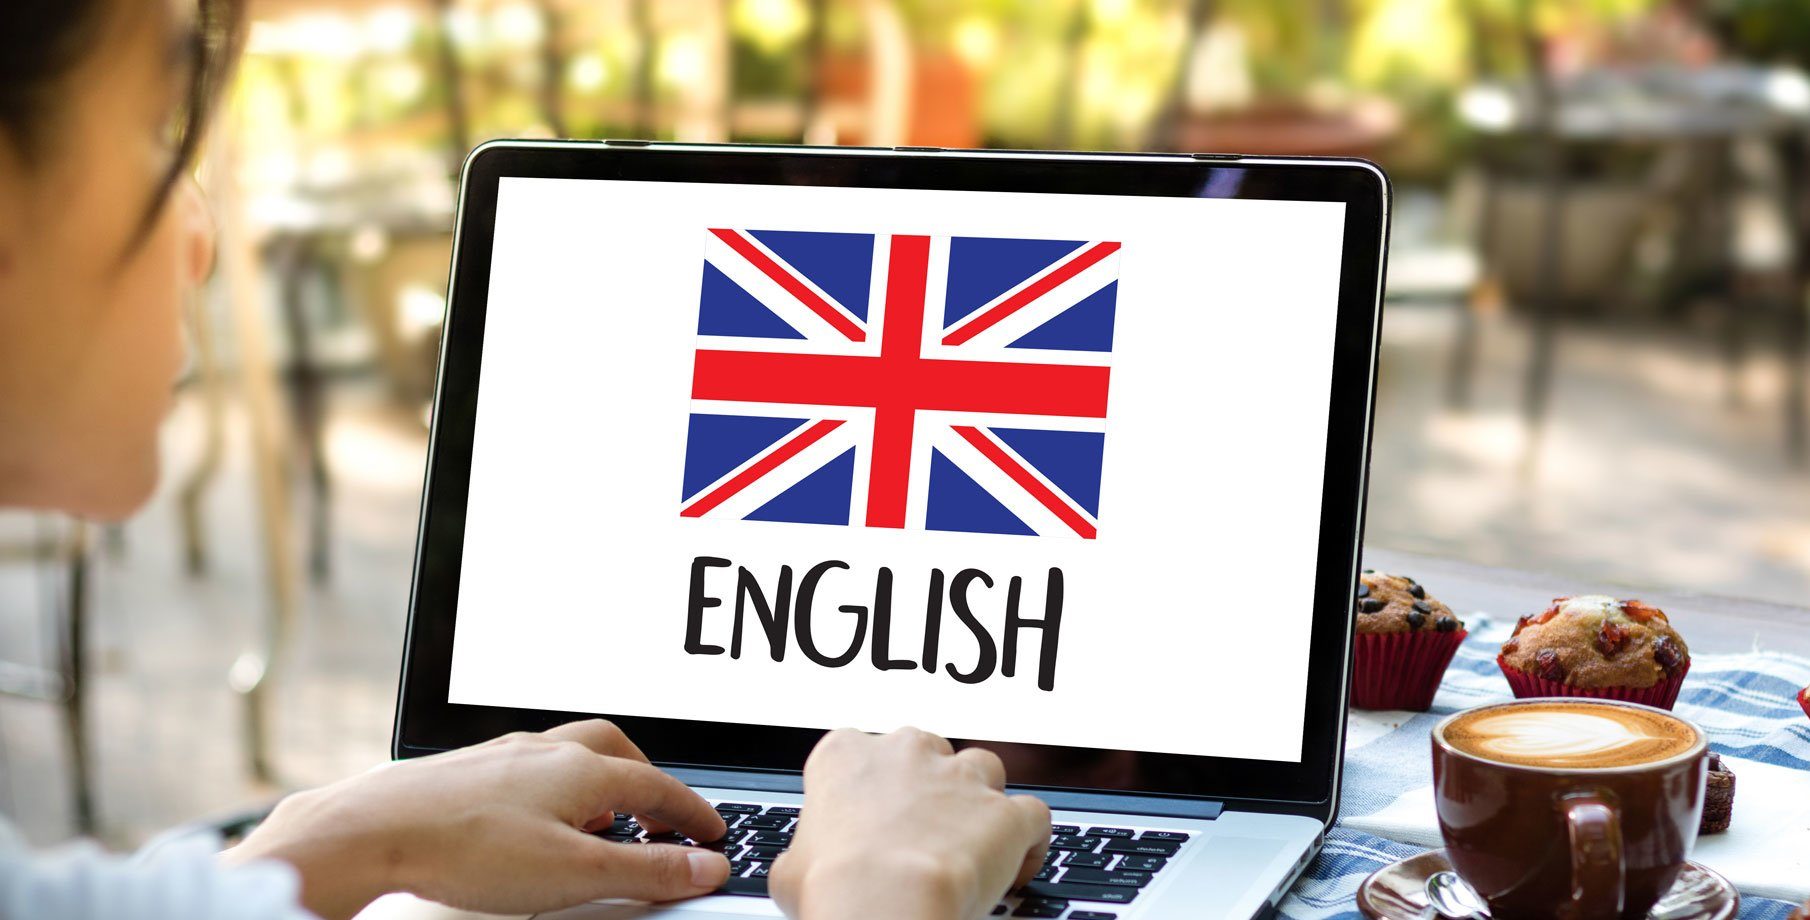 Ютуб каналы для изучения английского. Учим английский. Изучение английского языка. Обучение английскому языку.